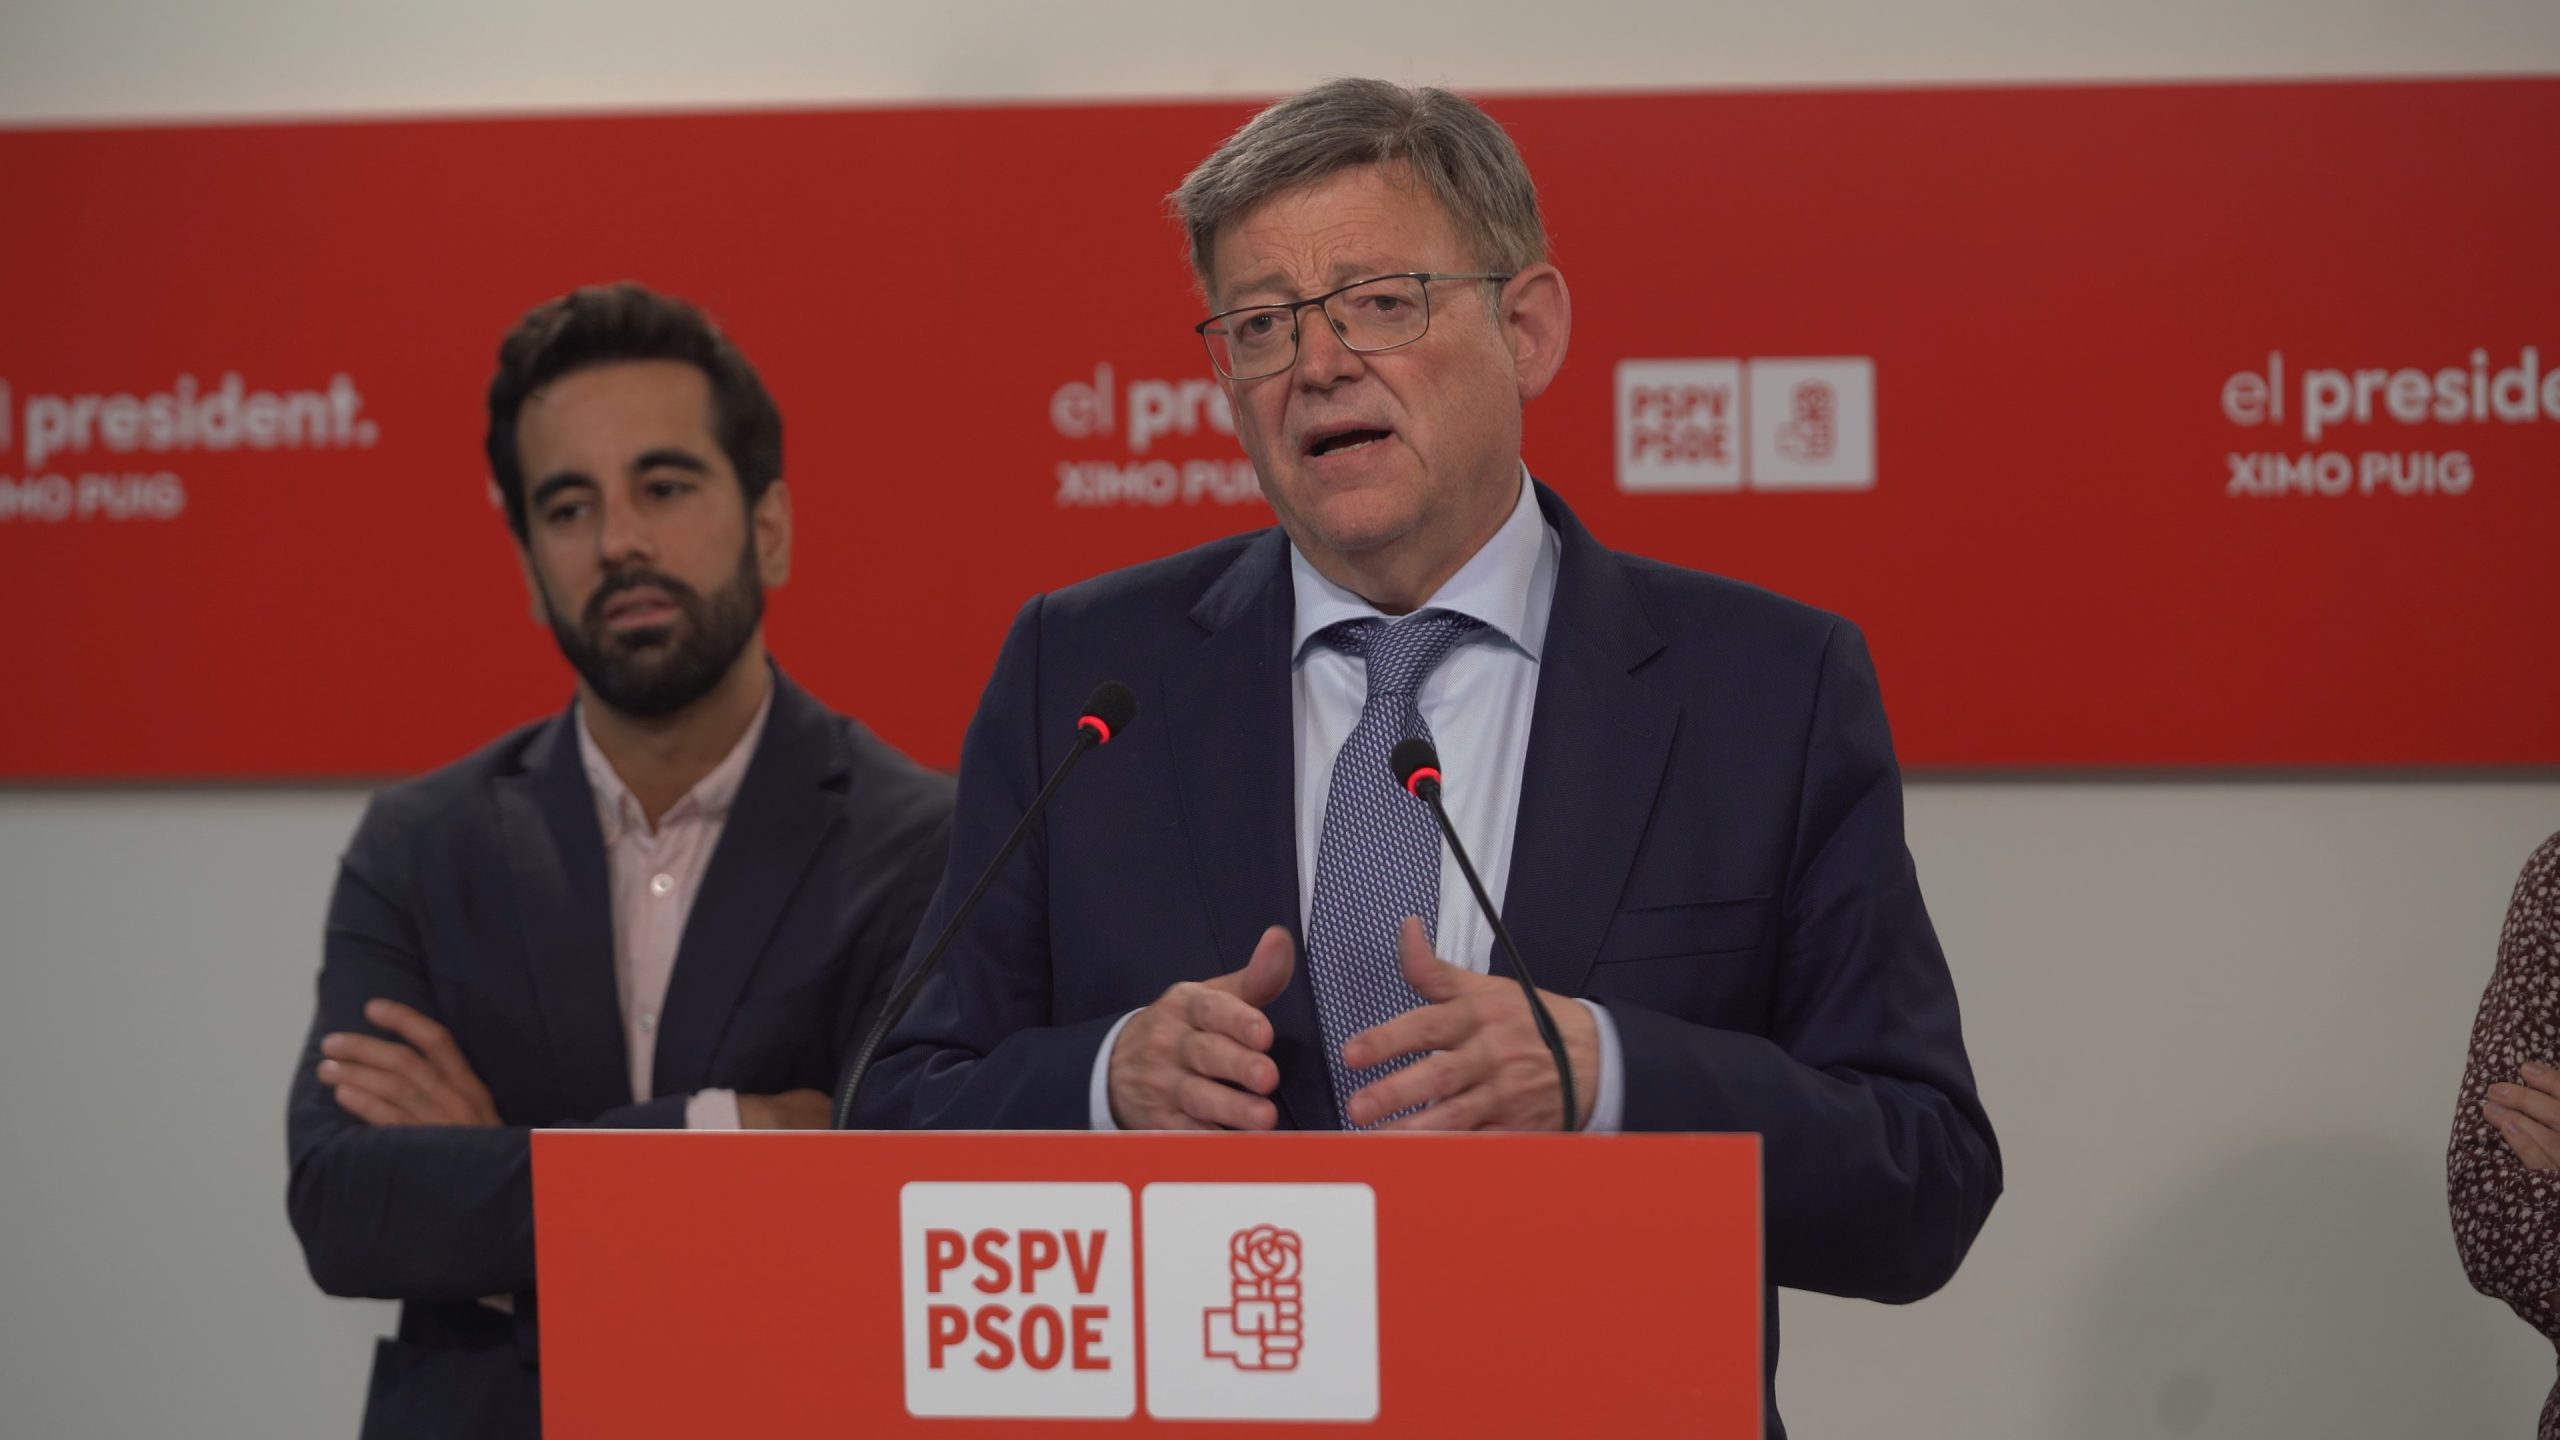 En este momento estás viendo Ximo Puig anuncia que liderará la alternativa en la Comunitat Valenciana con una oposición “constructiva y rotunda”